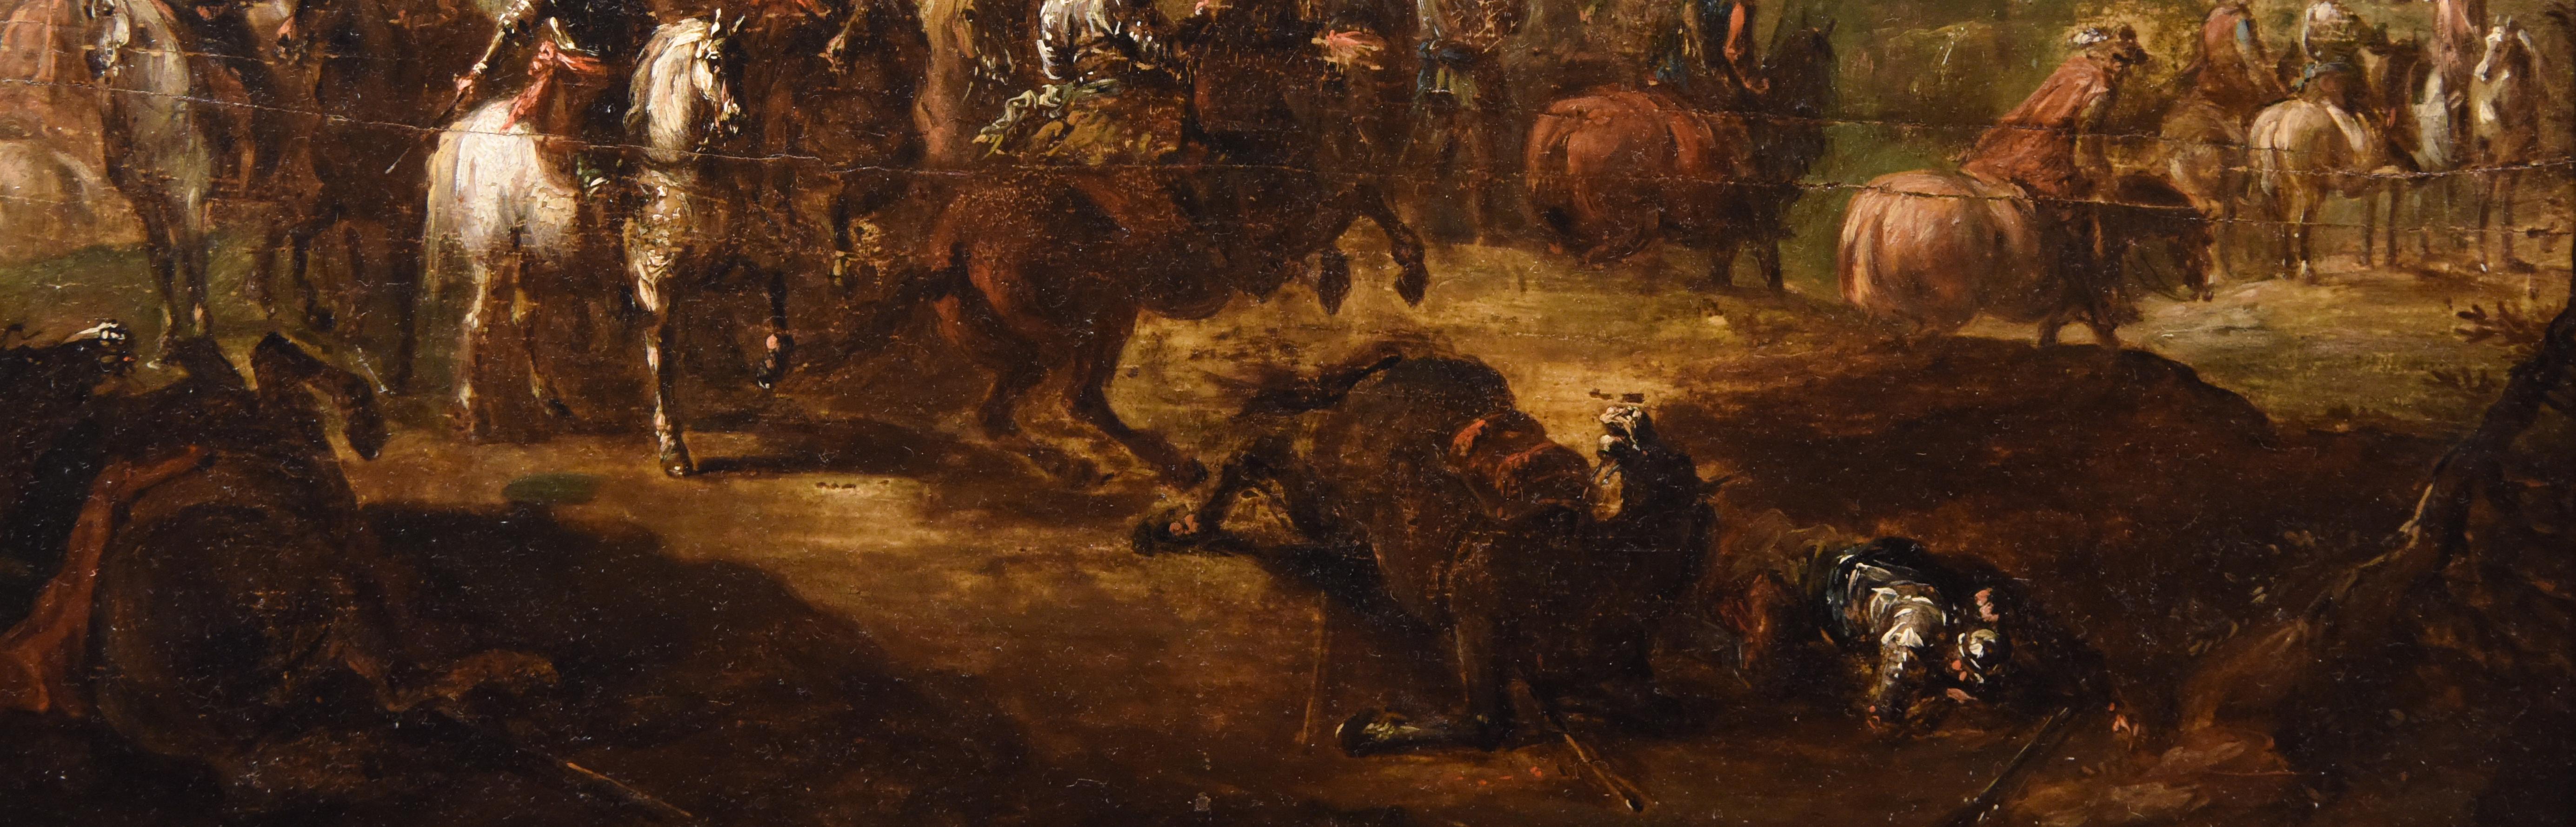 Ölgemälde mit dem Titel „Conquistadors nach der Schlacht“ aus dem 18. Jahrhundert 1